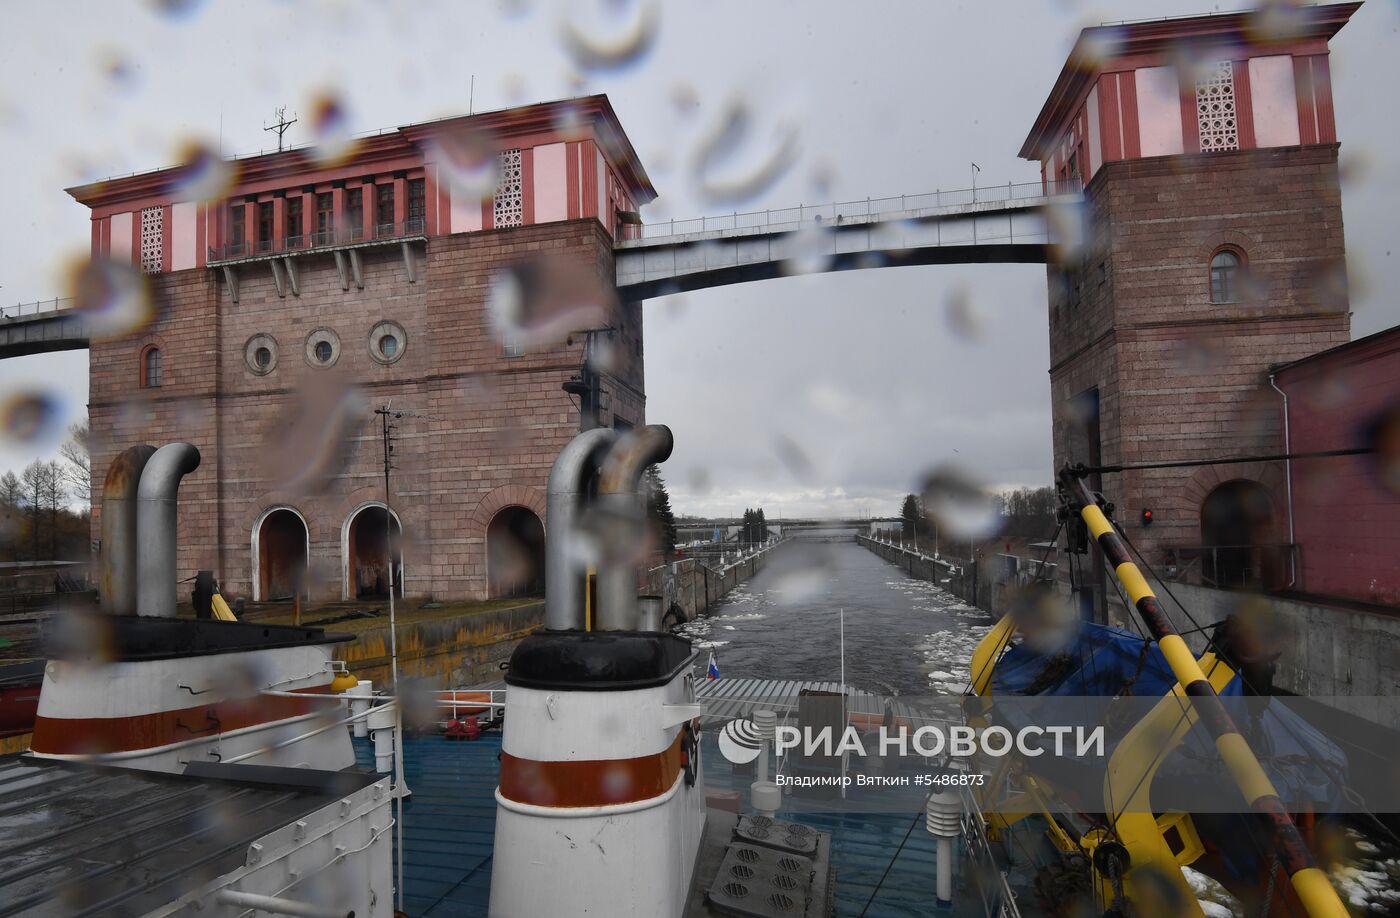 Подготовка судов к навигации на базе техобслуживания в Ярославской области